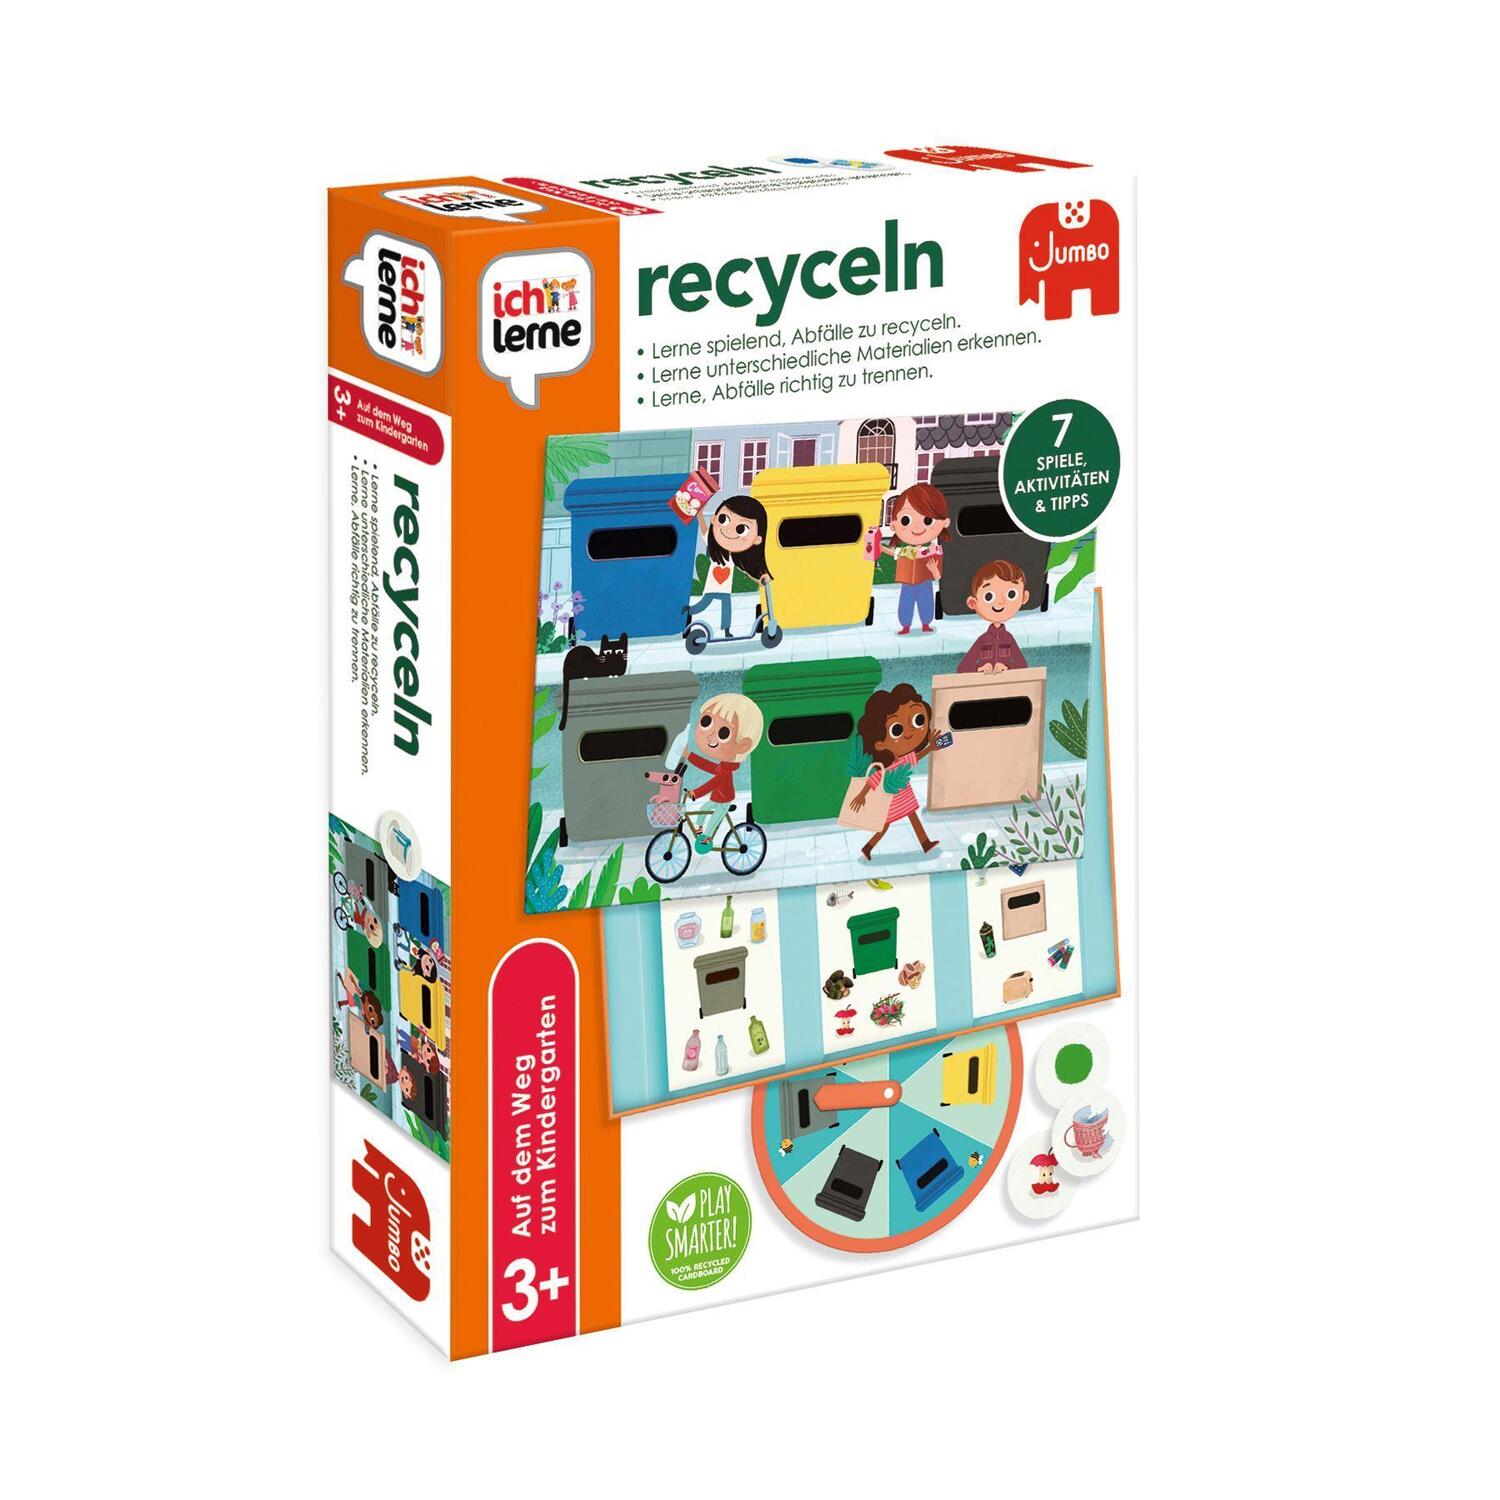 Bild: 8710126198780 | ich lerne recyceln | Spiel | Deutsch | 2022 | Jumbo Spiele GmbH